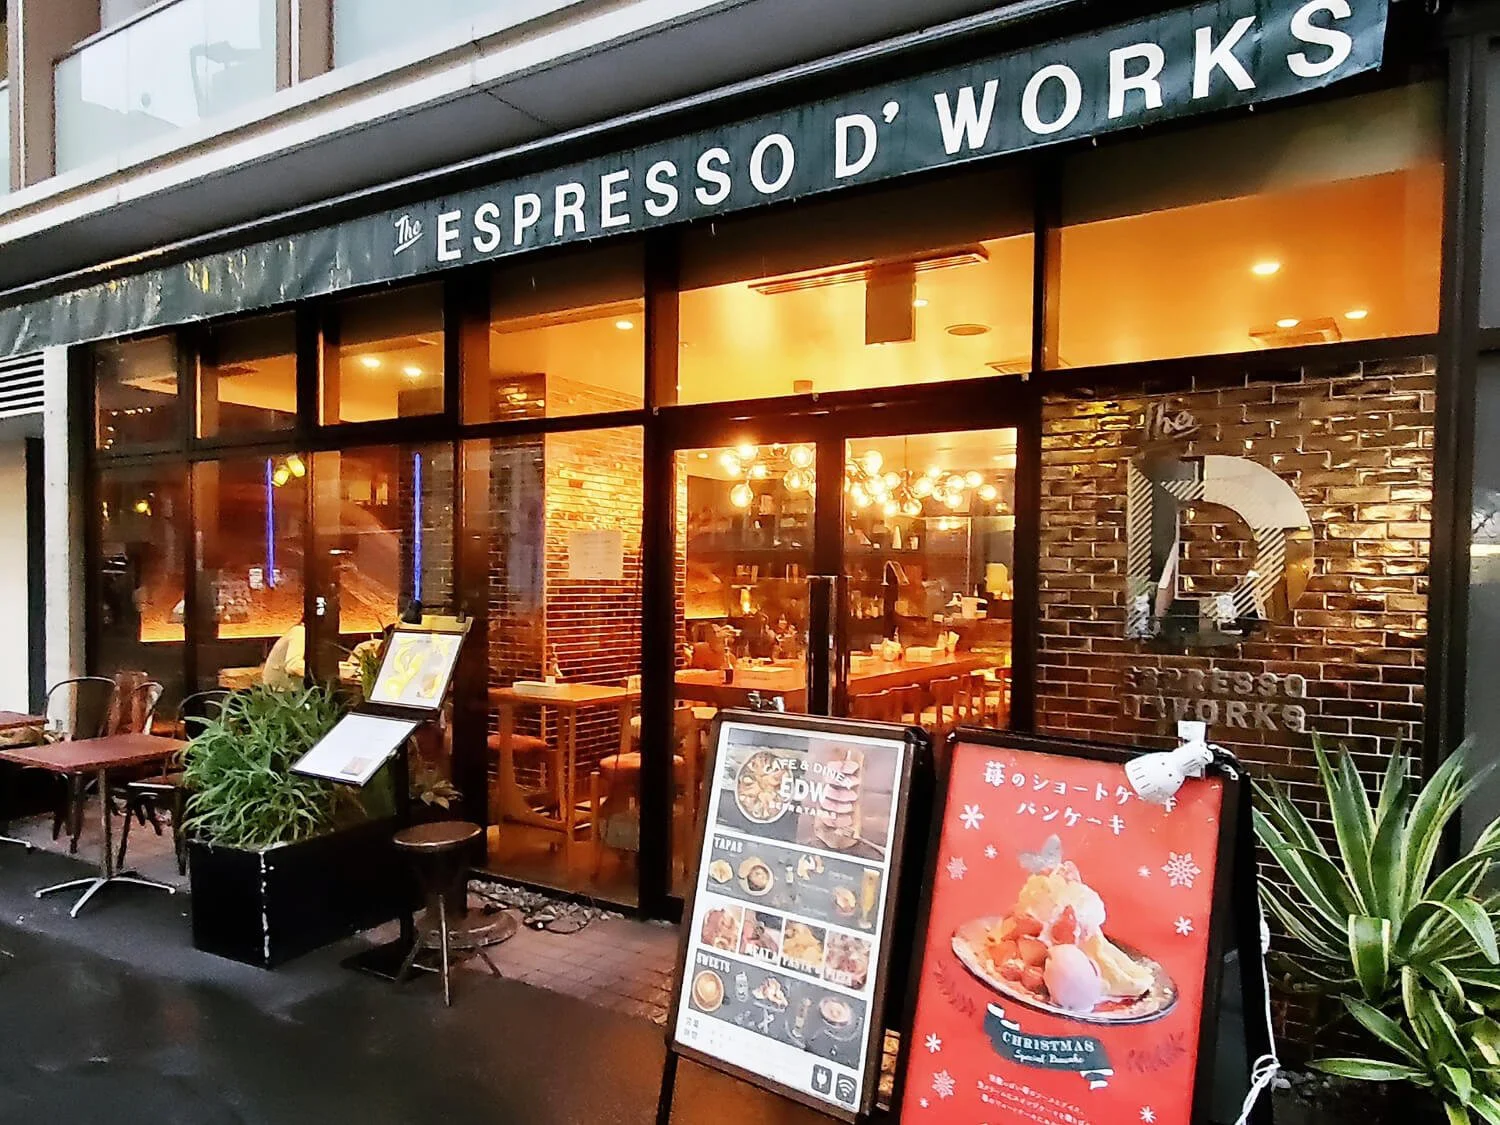 オシャレな雰囲気の人気カフェで ふわふわパンケーキ Espresso D Works エスプレッソディーワークス 黒猫スイーツ散歩 恵比寿編 さんたつ By 散歩の達人